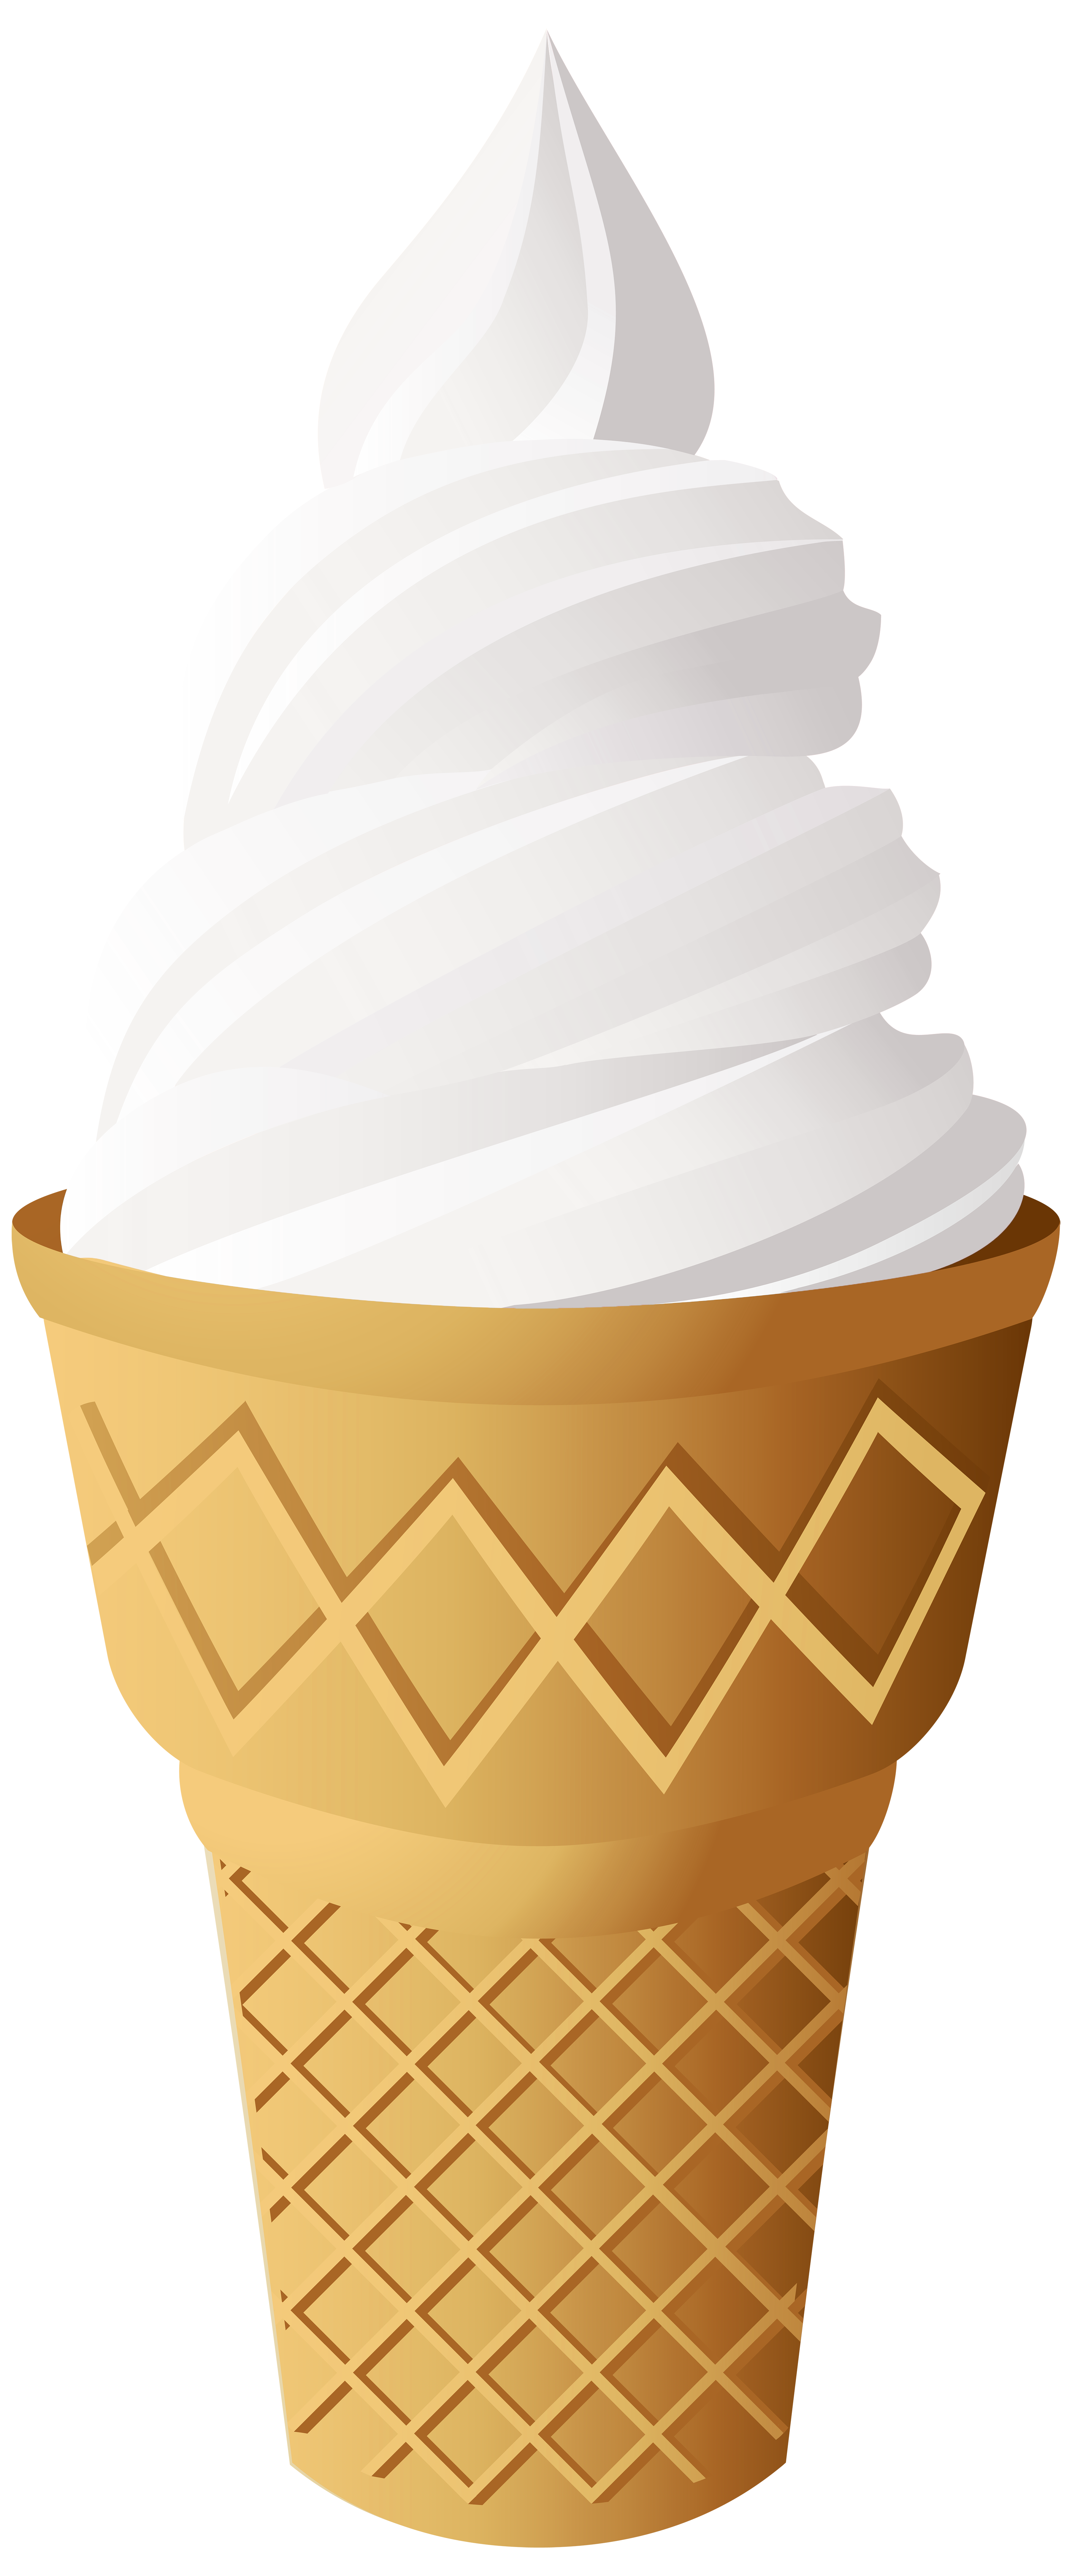 Vanilla ice cream clipart - Clipground